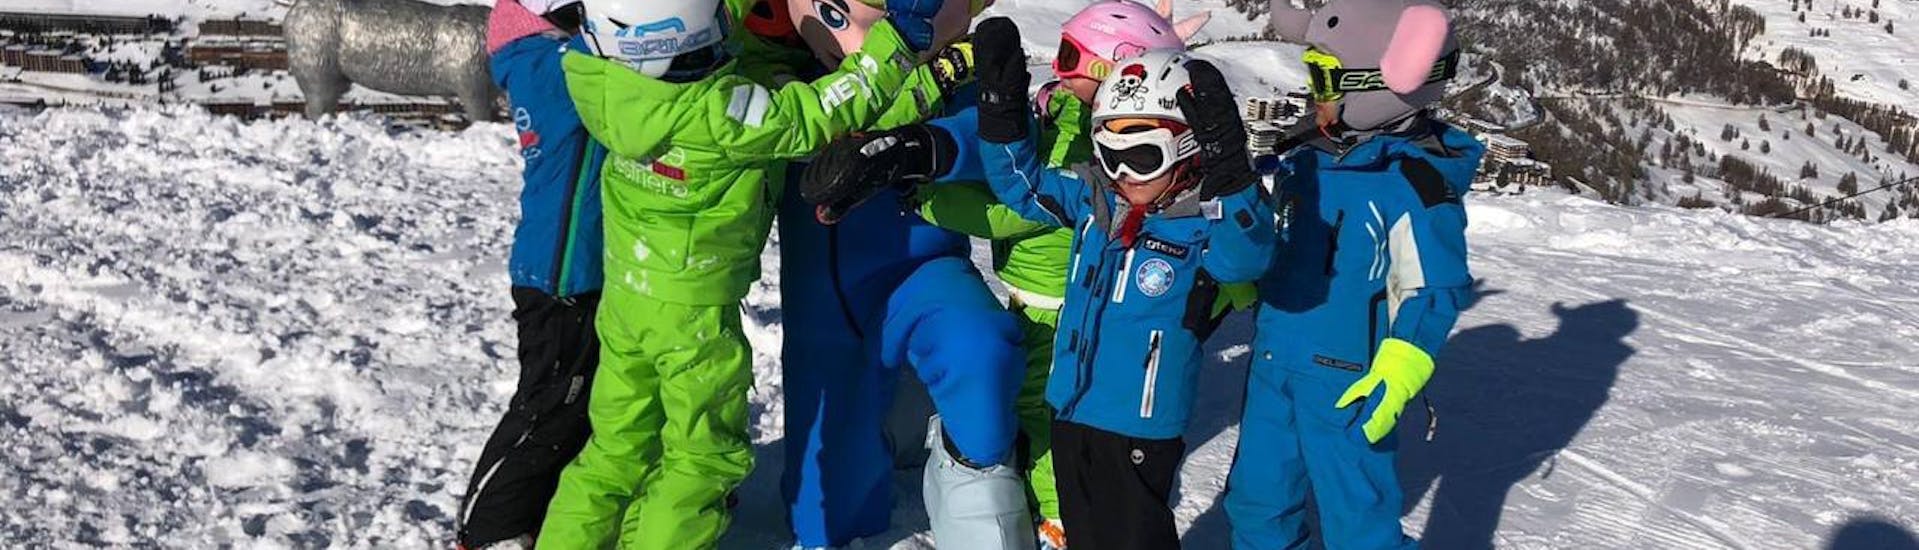 I bambini festeggiano con la mascotte dopo le Lezioni di snowboard per bambini (4-8 anni) per principianti assoluti nella Scuola Sci Vialattea Sauze d'Olux